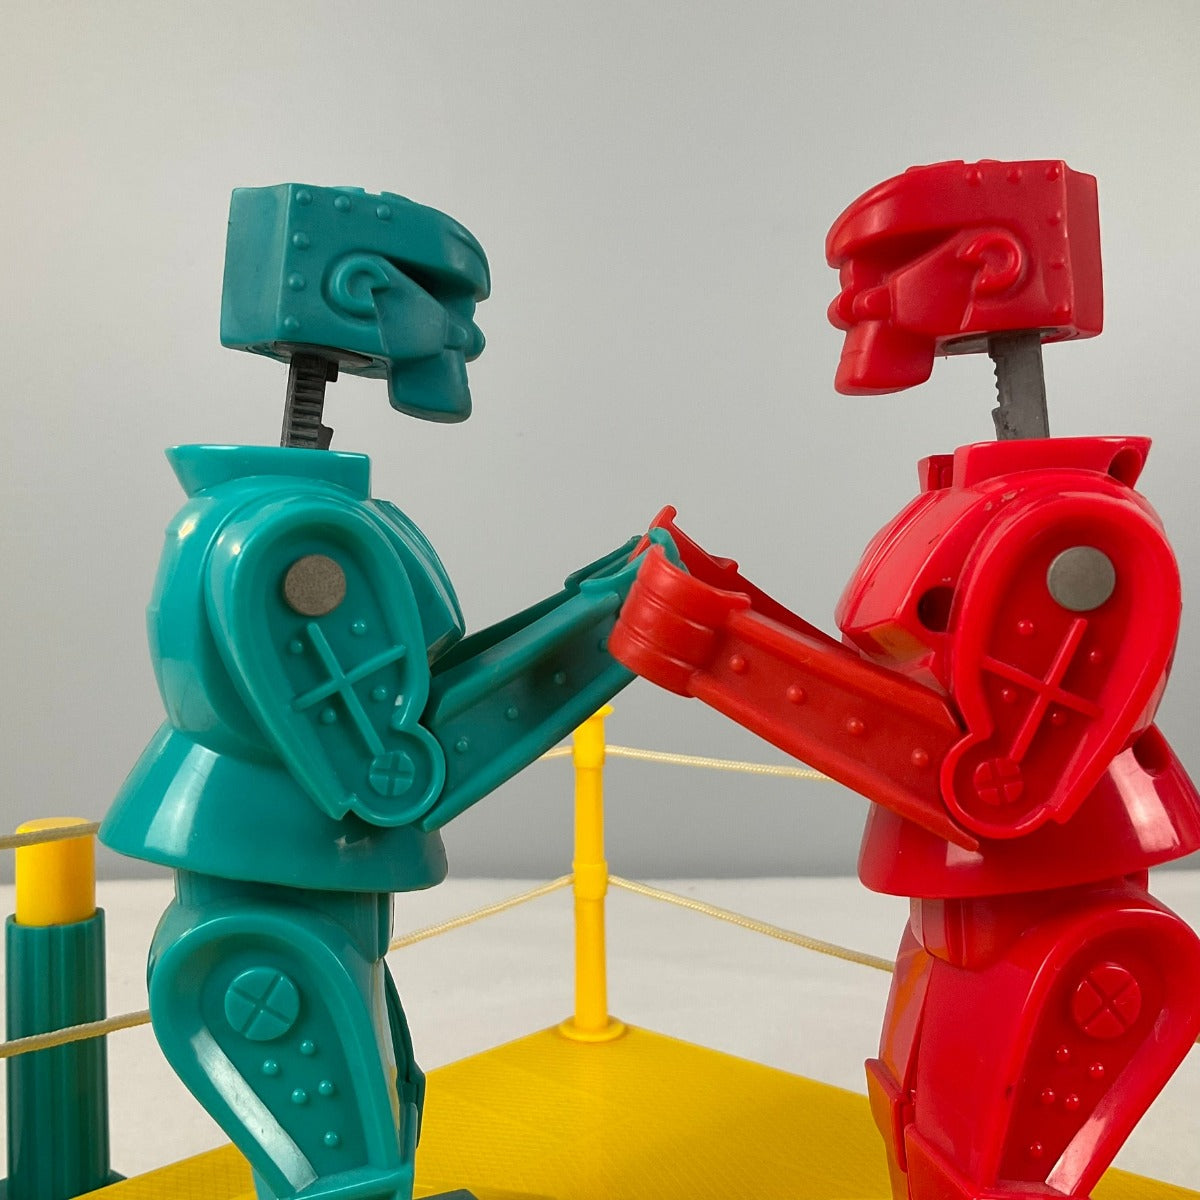 Vintage Rock'em Sock'em Robots game by Mattel - 2001 Version – The